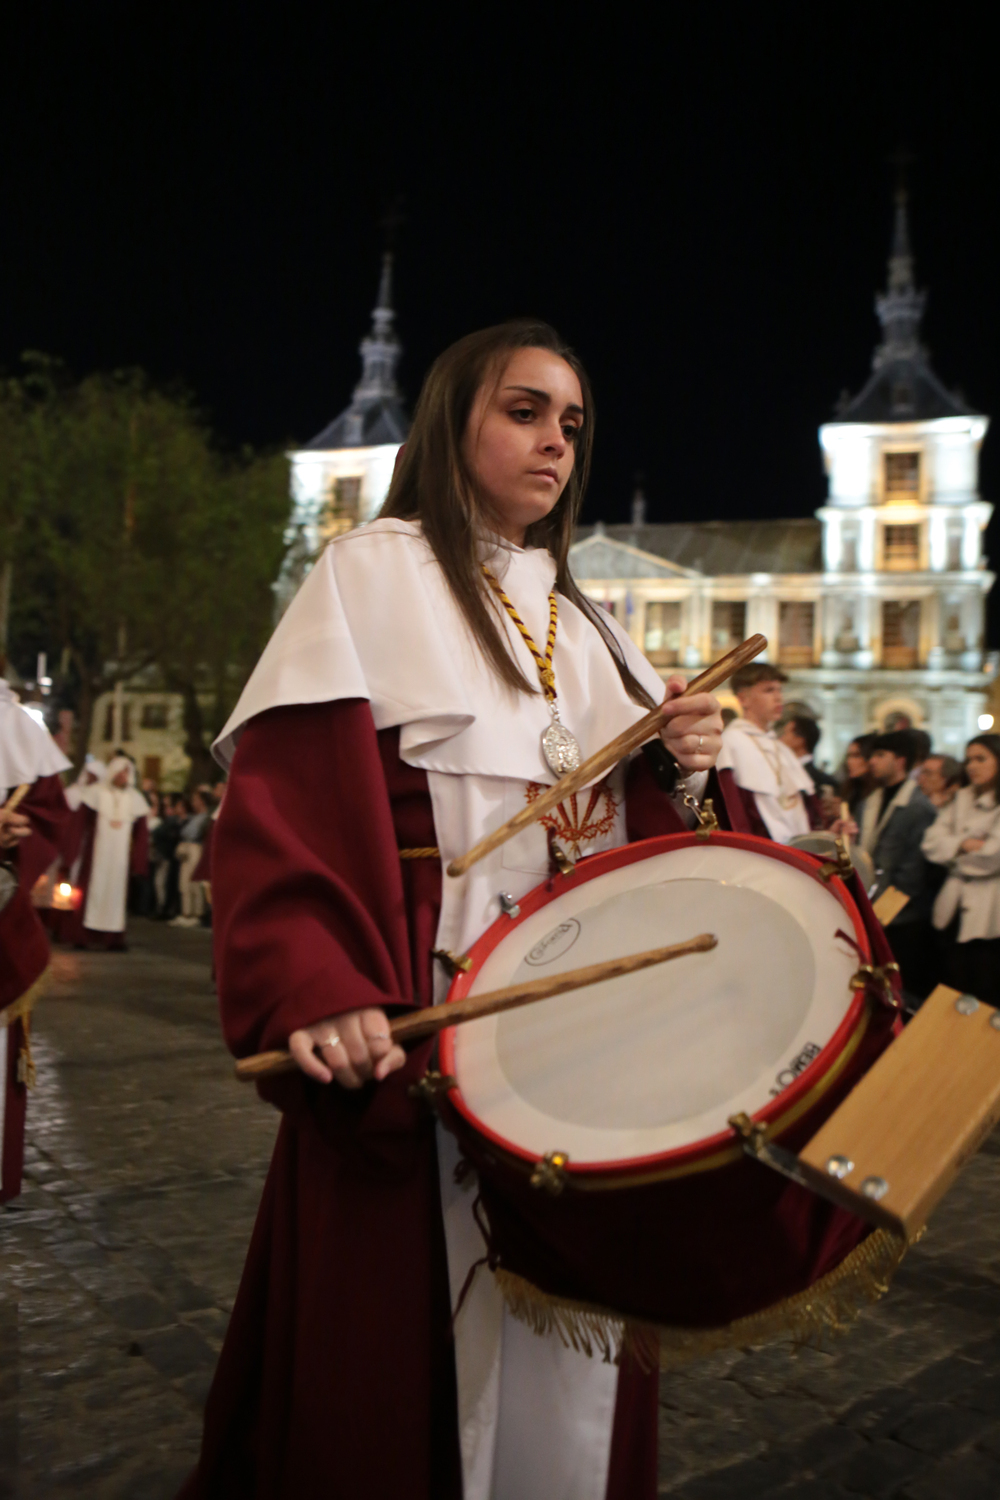 La banda de tambores y cornetas del Cristo de la Vega confiere dramatismo a la procesión.